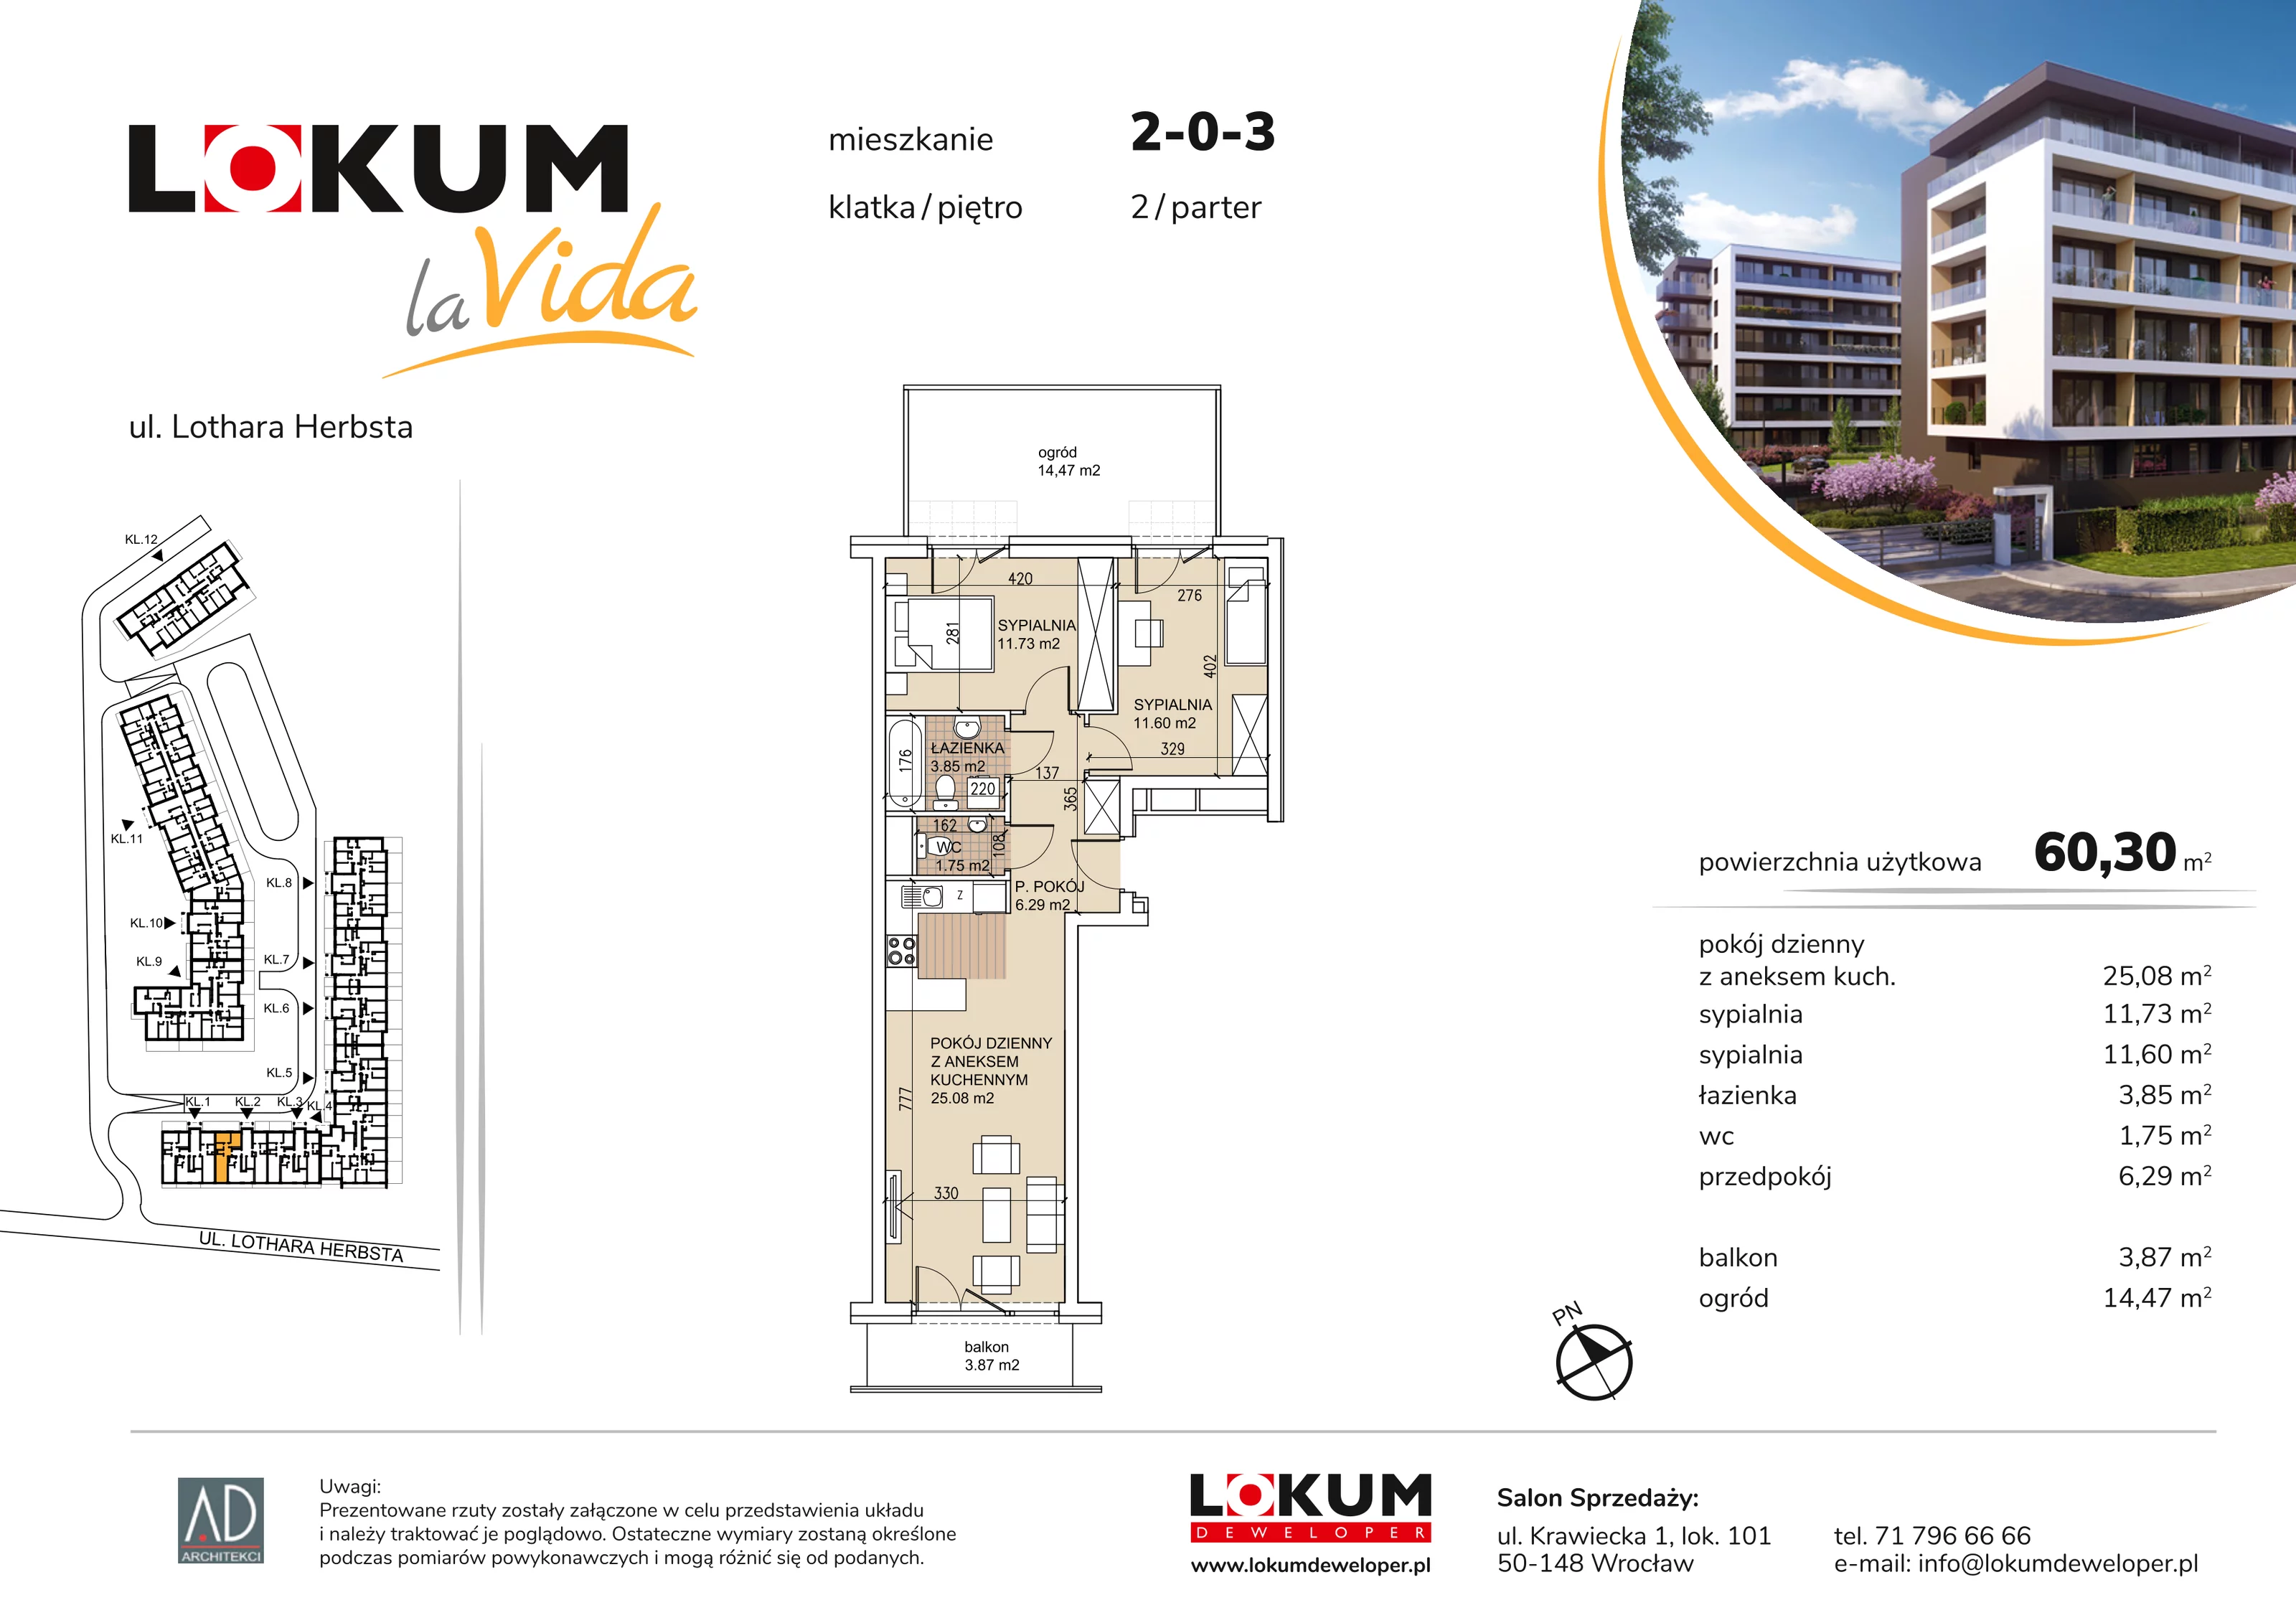 Mieszkanie 60,30 m², parter, oferta nr 2-0-3, Lokum la Vida, Wrocław, Sołtysowice, ul. Lothara Herbsta